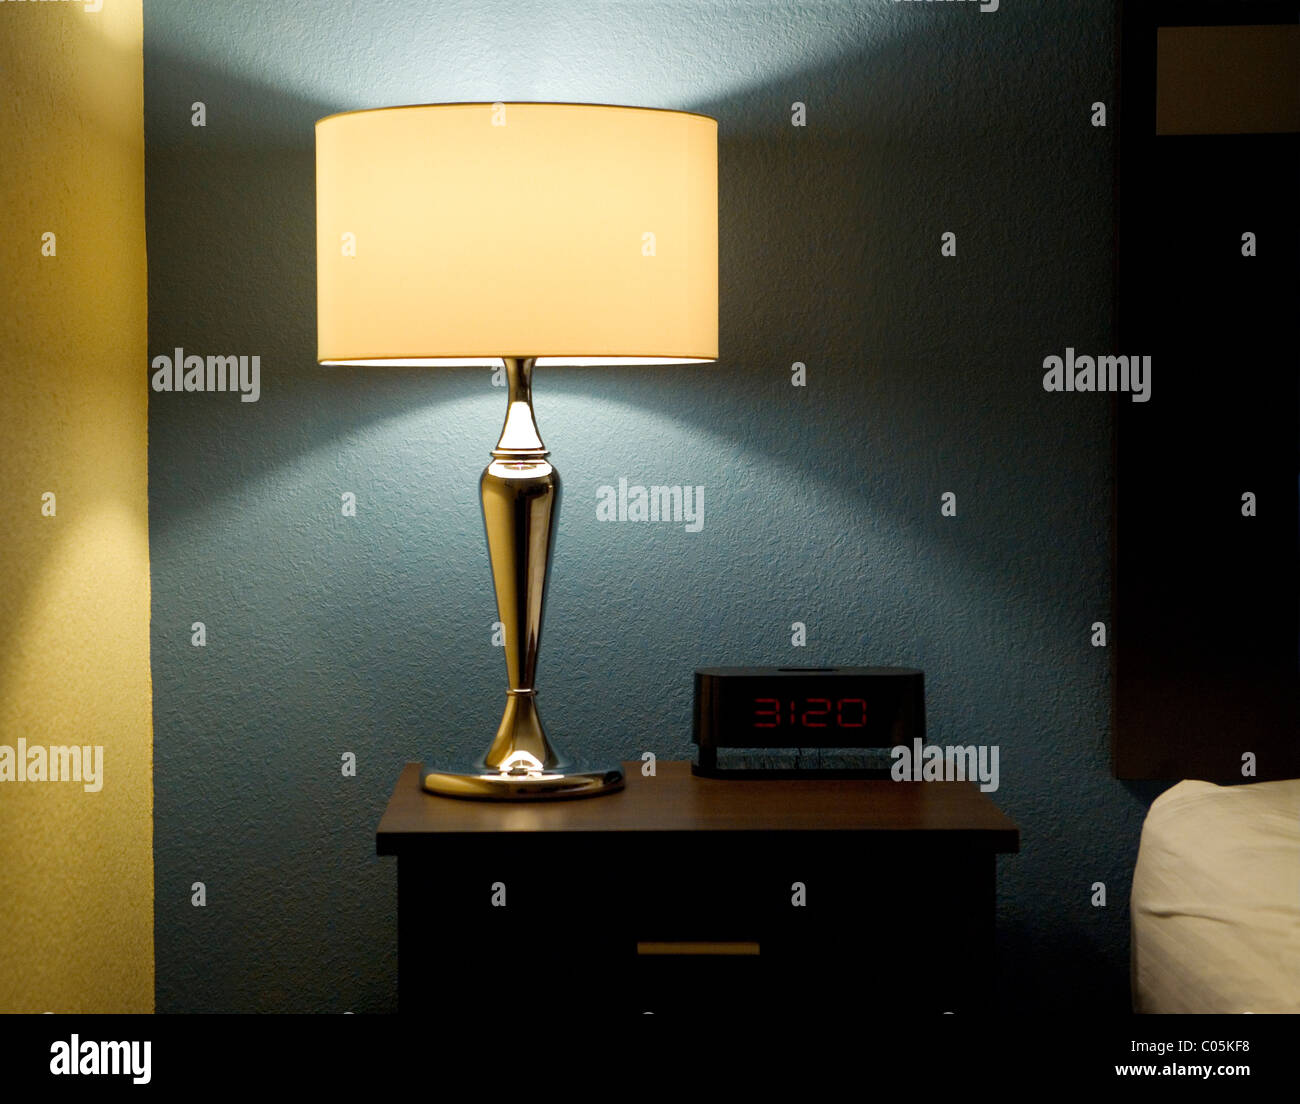 Lampe, Digitaluhr und Beistelltisch neben einem Bett. Stockfoto